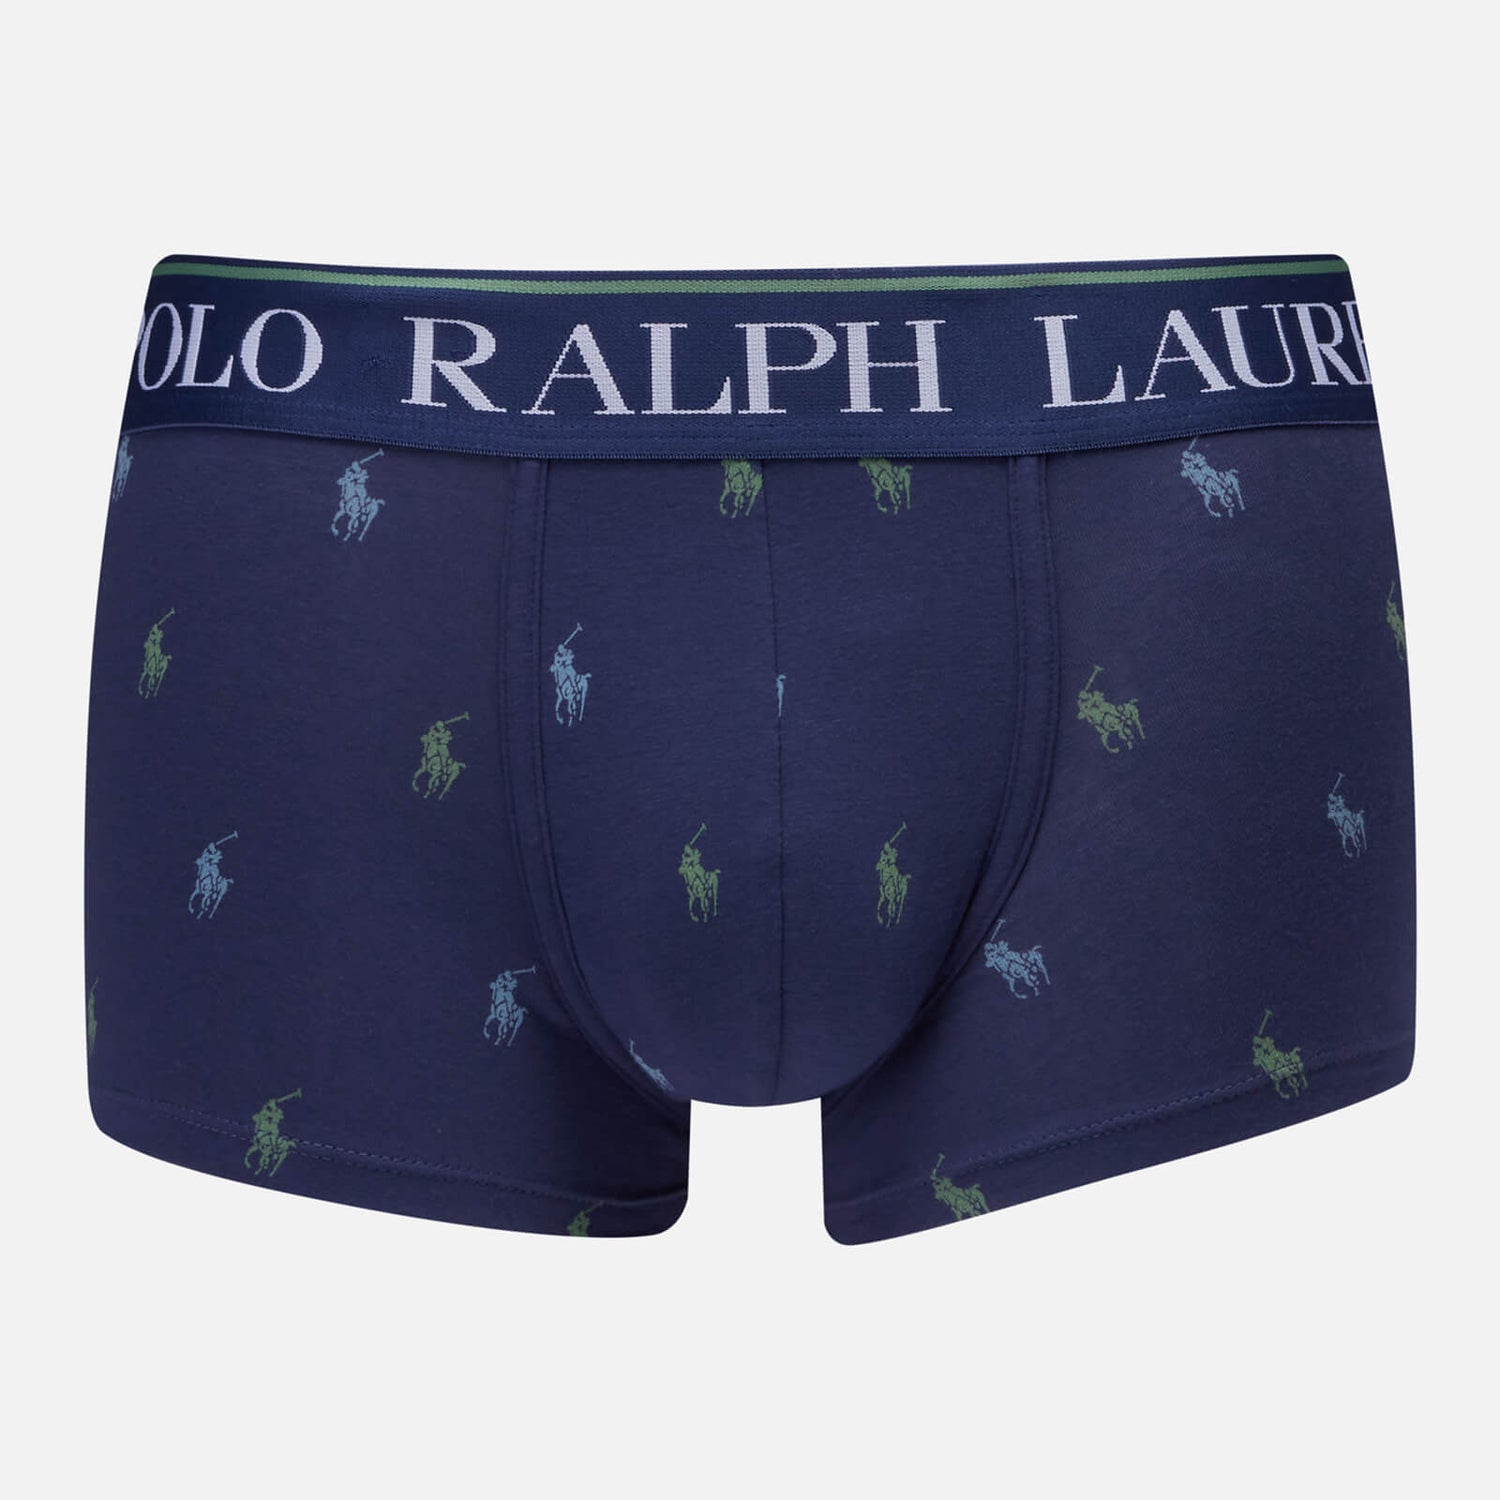 Polo Ralph Lauren Men's All Over Print Single Trunks - Light Navy - S